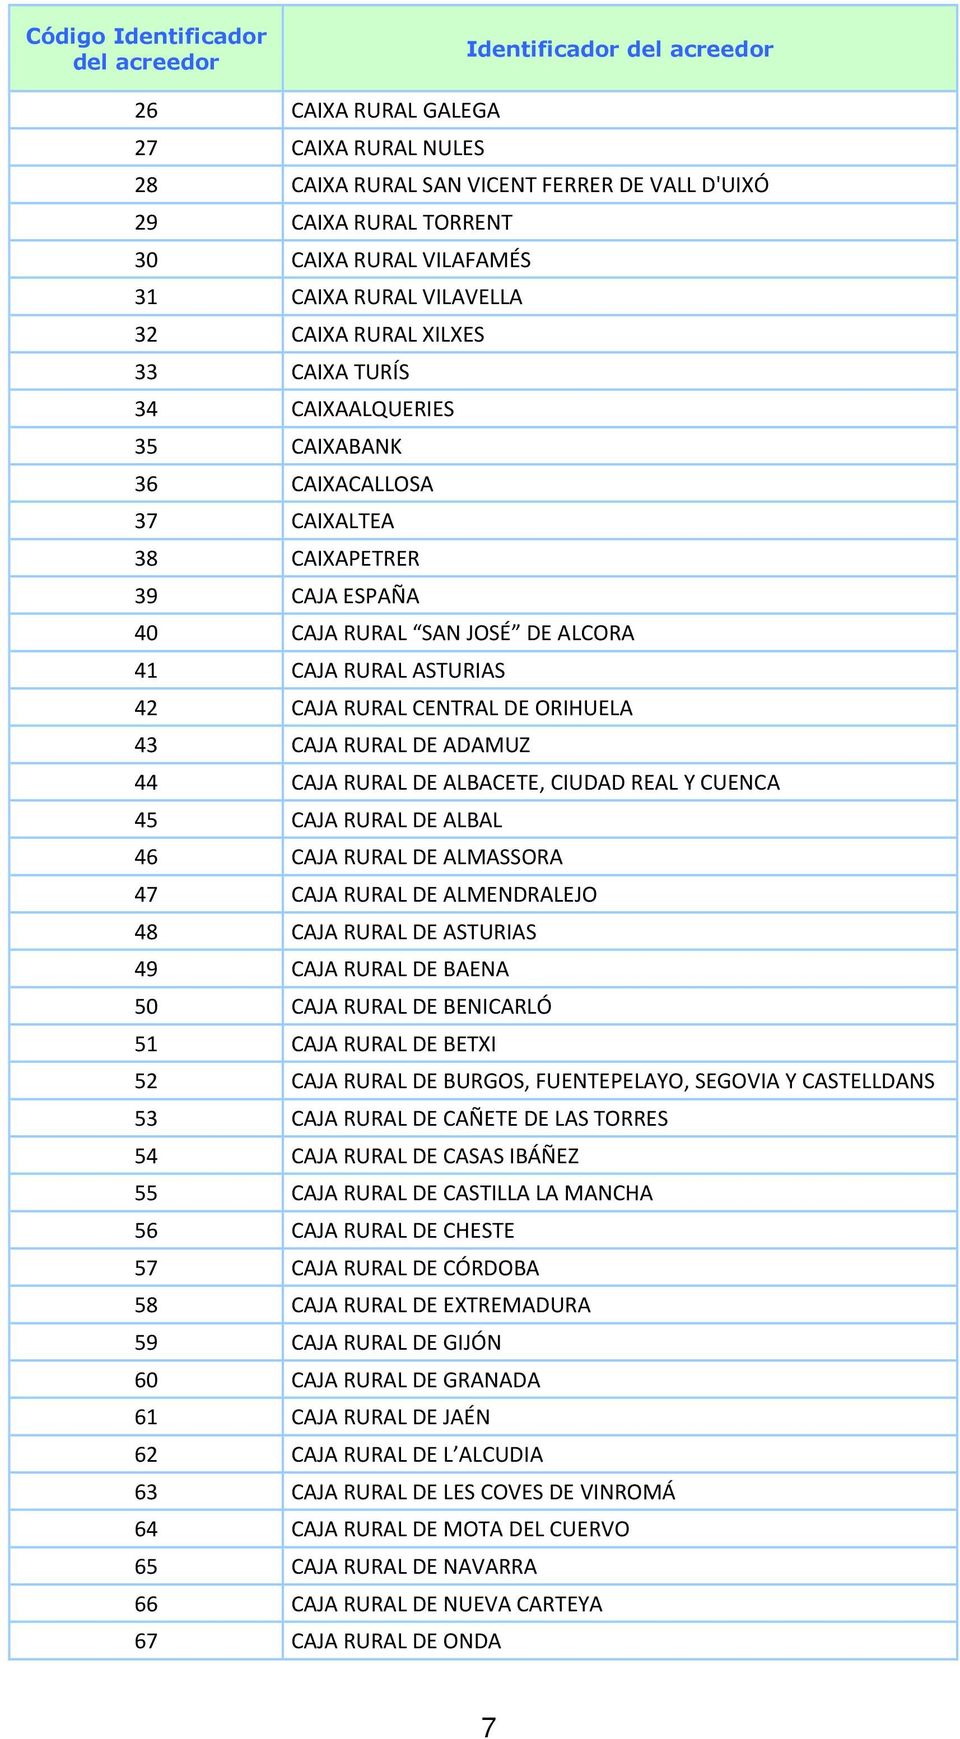 ASTURIAS 42 CAJA RURAL CENTRAL DE ORIHUELA 43 CAJA RURAL DE ADAMUZ 44 CAJA RURAL DE ALBACETE, CIUDAD REAL Y CUENCA 45 CAJA RURAL DE ALBAL 46 CAJA RURAL DE ALMASSORA 47 CAJA RURAL DE ALMENDRALEJO 48